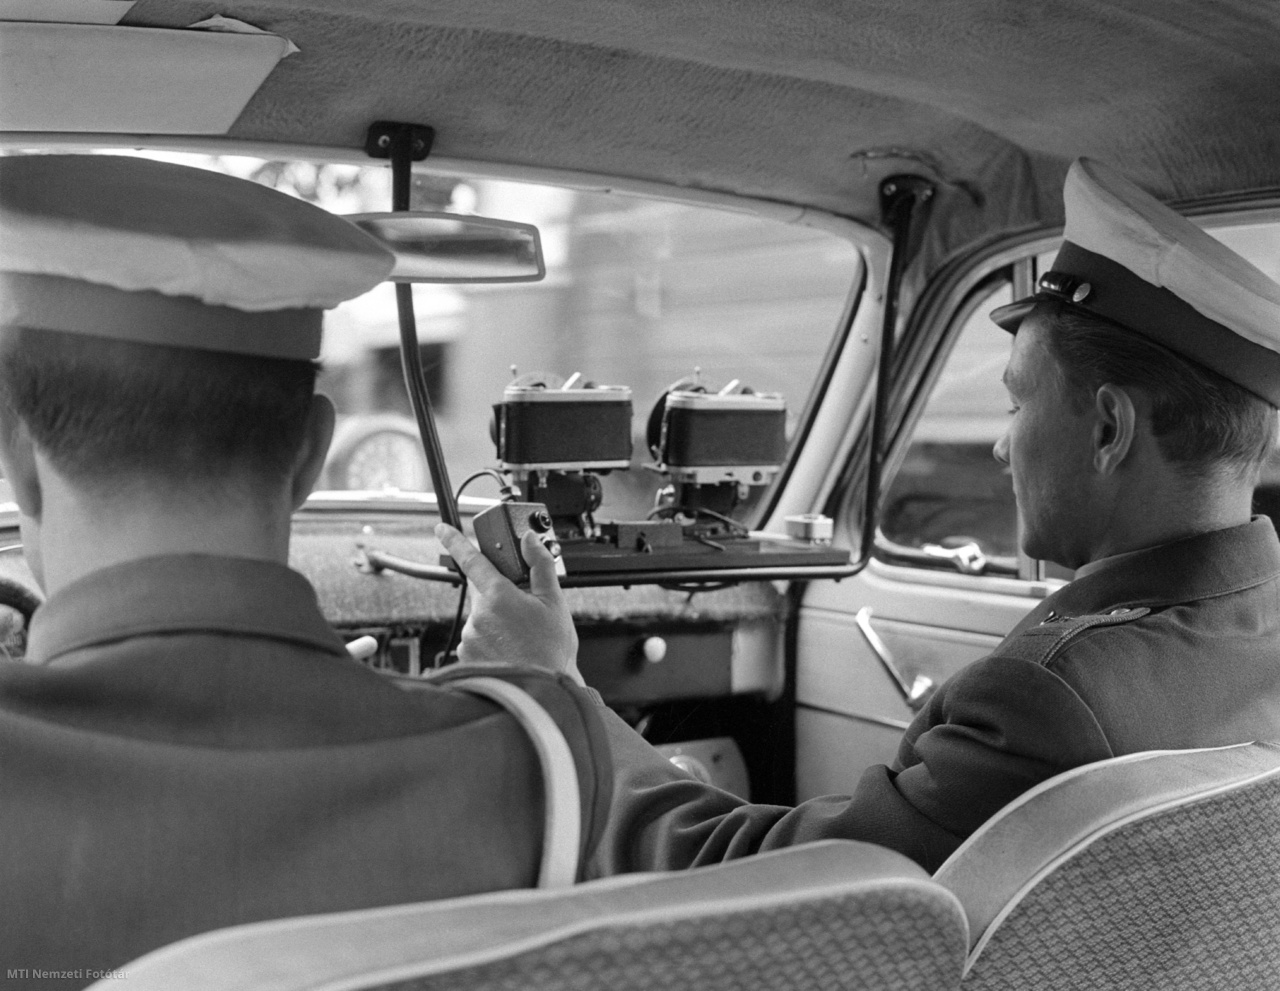 Budapest, 1965. augusztus 27. Rendőrautóba szerelt, fényképezőgépekkel kombinált közúti sebességmérő műszert (traffipax) kezel egy rendőr. A Közlekedésrendészet közúti ellenőrző csoportja újfajta technikai felszerelést használ a közúti közlekedés ellenőrzésénél. A berendezés fényképeken regisztrálja a gyorshajtást.